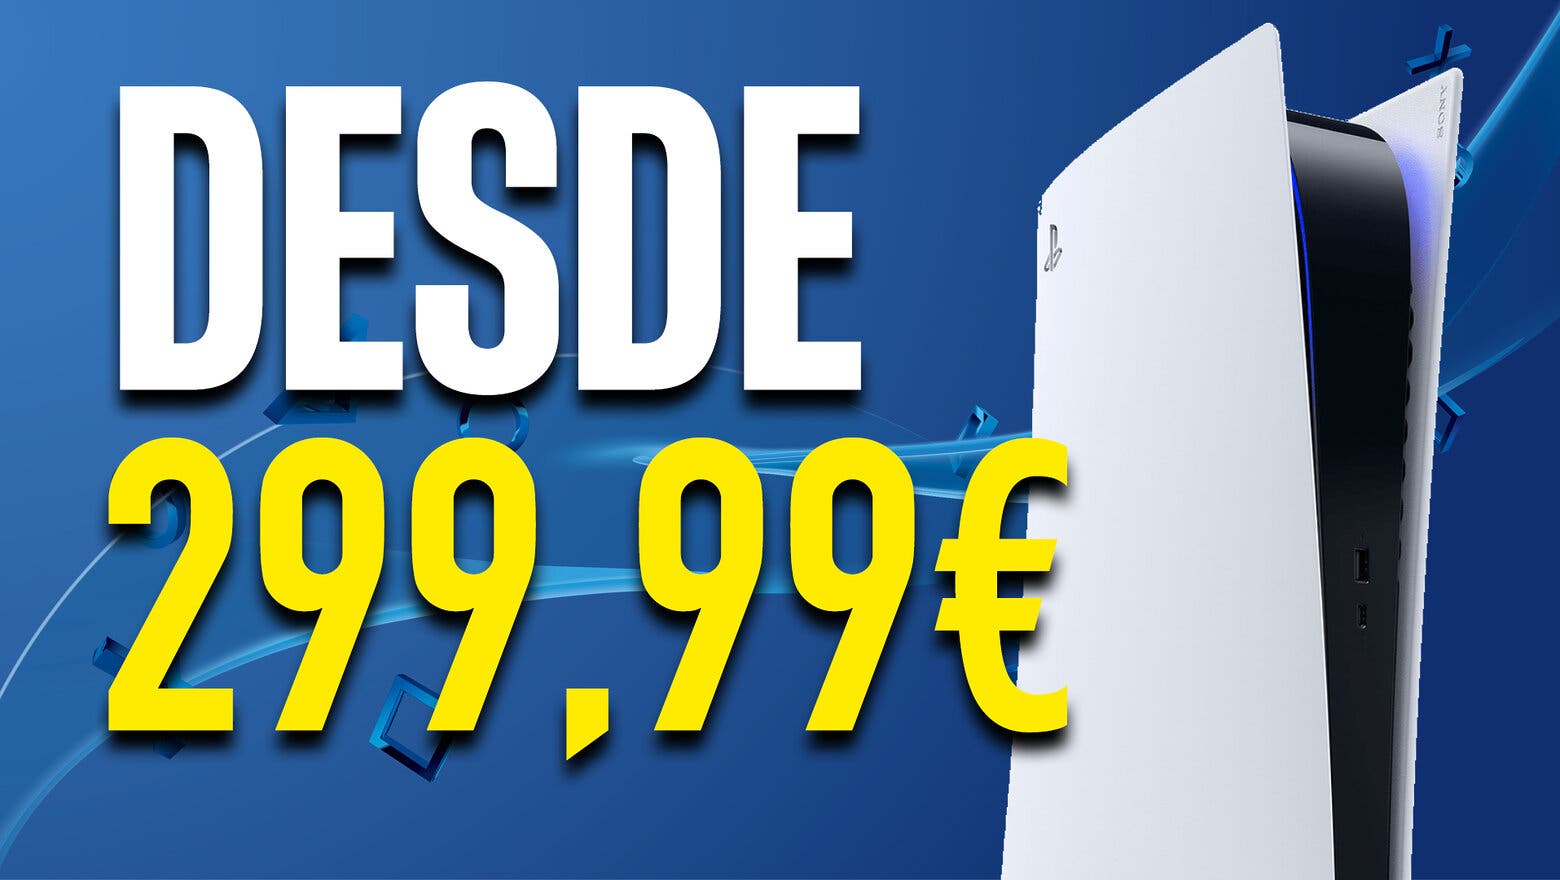 Imagen de ¿Una PS5 desde 299,99 euros? Es posible hacerse con una a ese precio y te cuento cómo